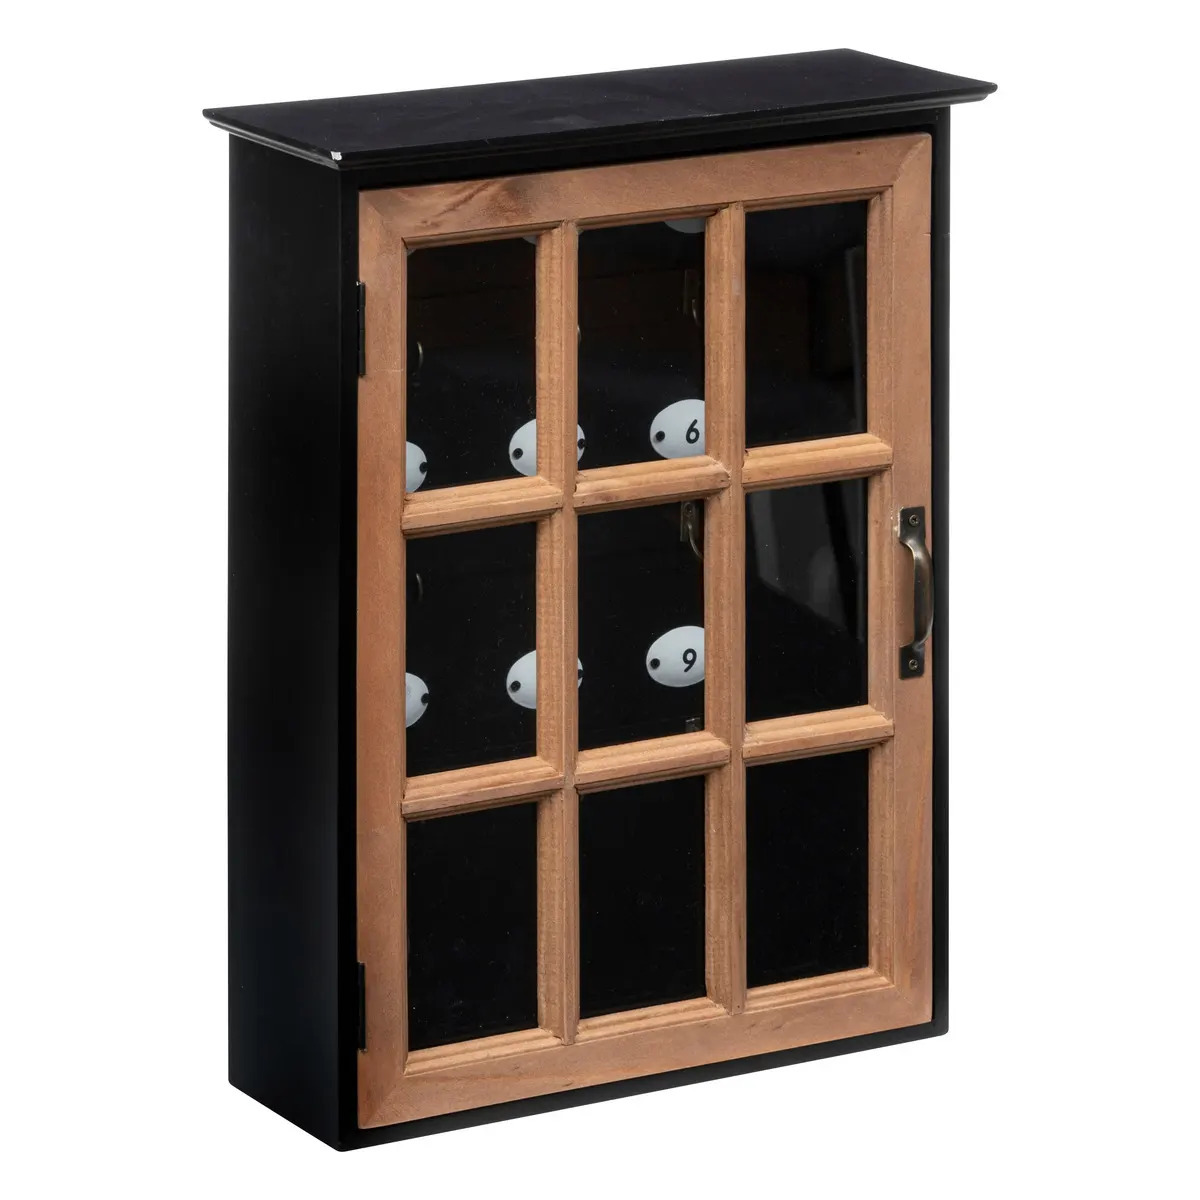 Atmosphera Sleutelkastje Classic Cabinet - mdf/glas - zwart/bruin - 30 x cm - Voor 9 sleutels -